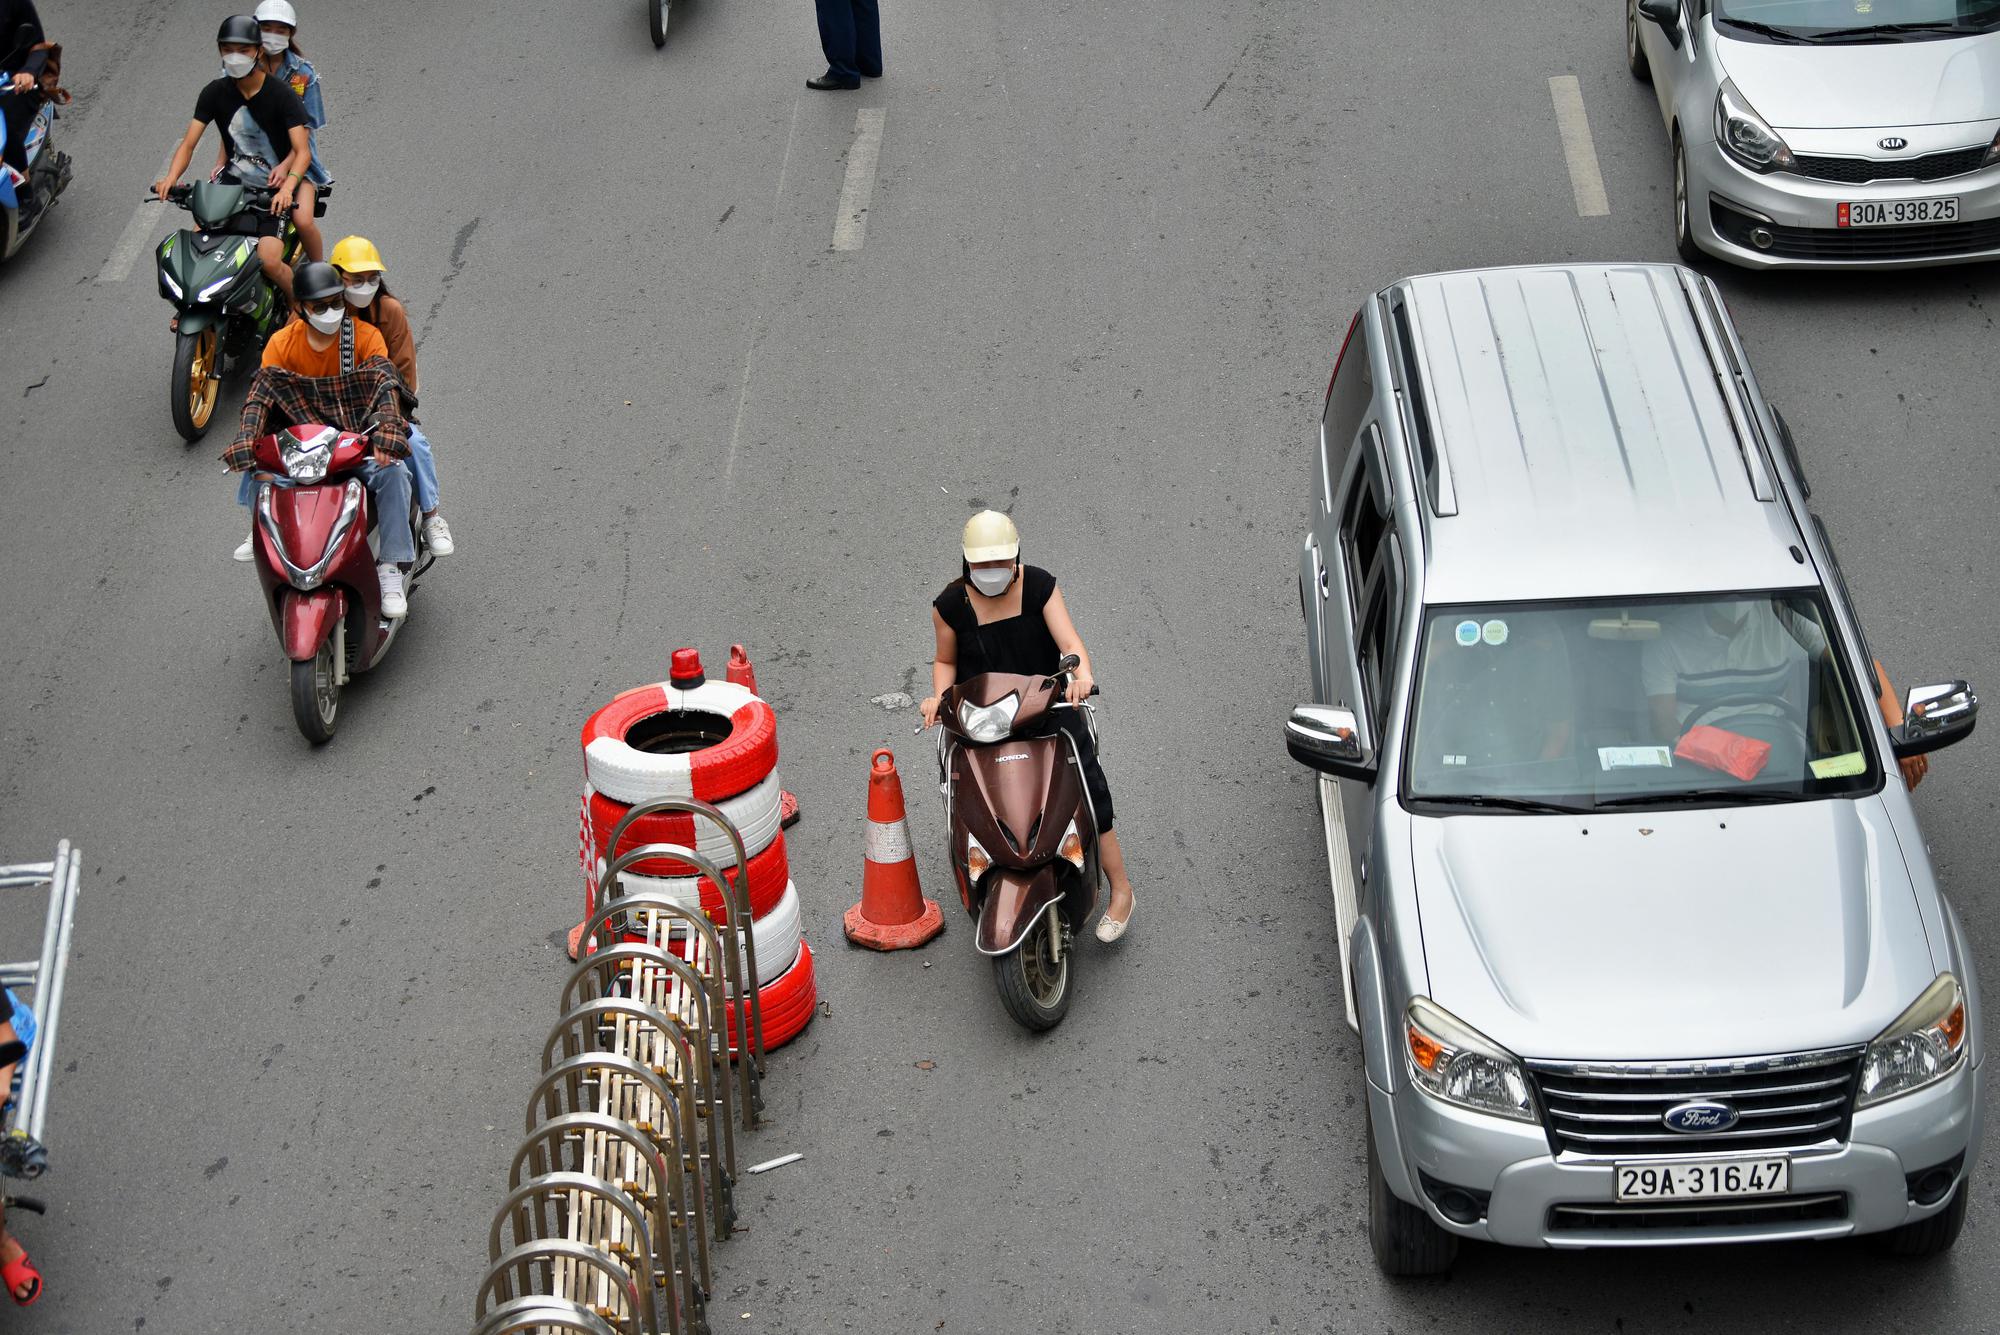 Ngày đầu Hà Nội phân làn đường Nguyễn Trãi: Giao thông hỗn loạn, nhiều người gặp tai nạn vì đâm vào dải phân cách - Ảnh 6.